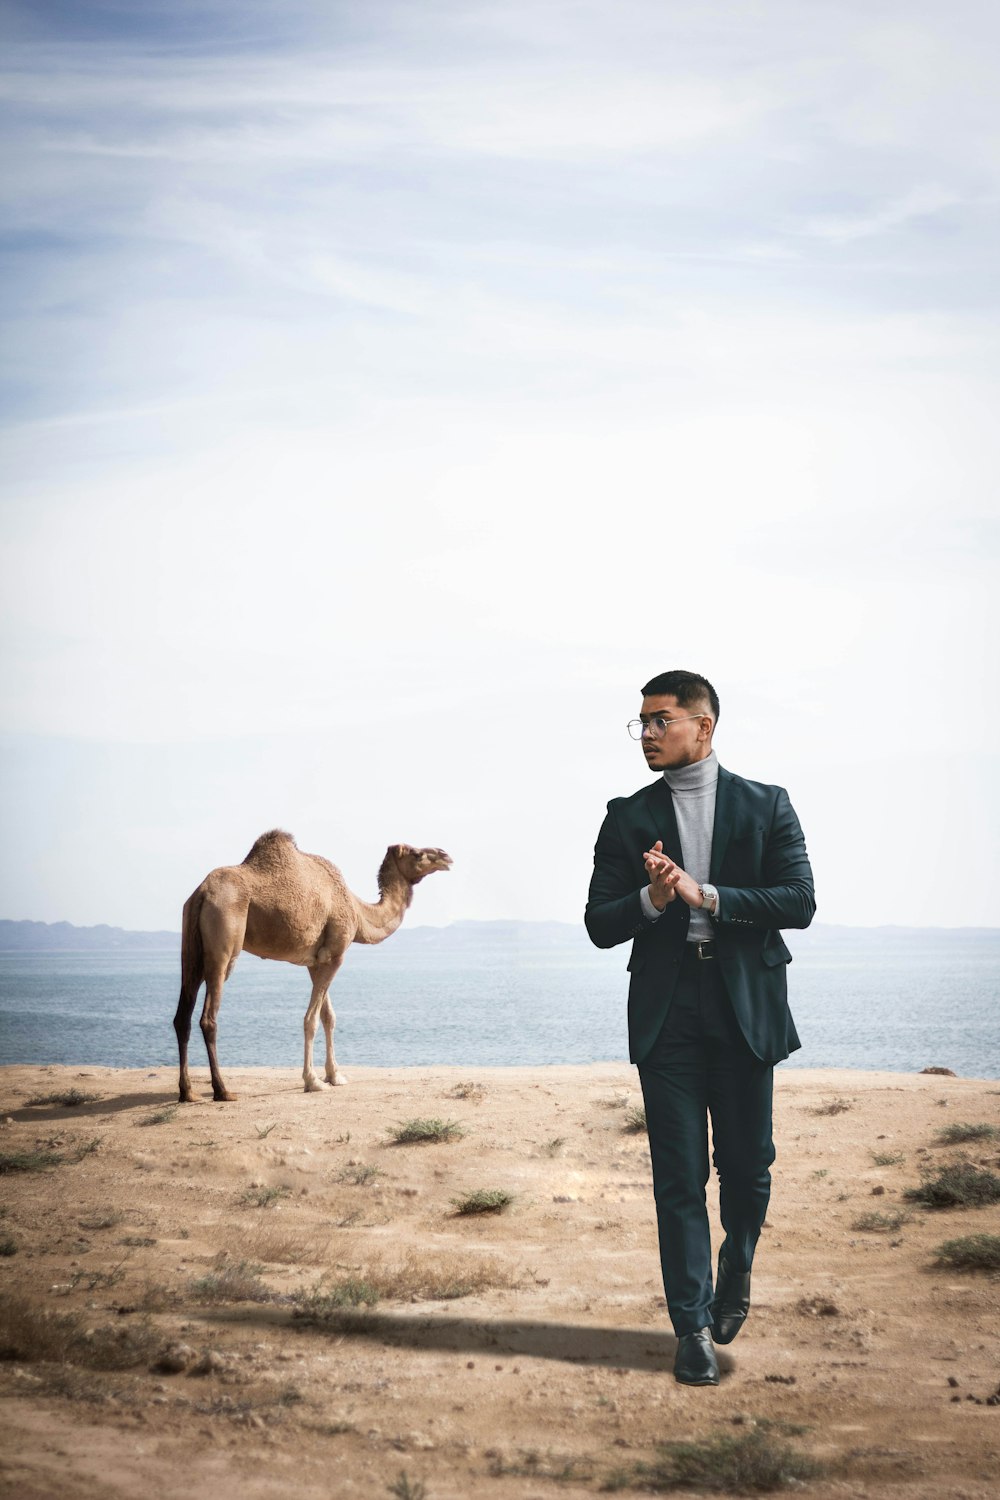 Hombre con camisa de vestir azul y pantalones negros de pie junto a camello marrón durante el día